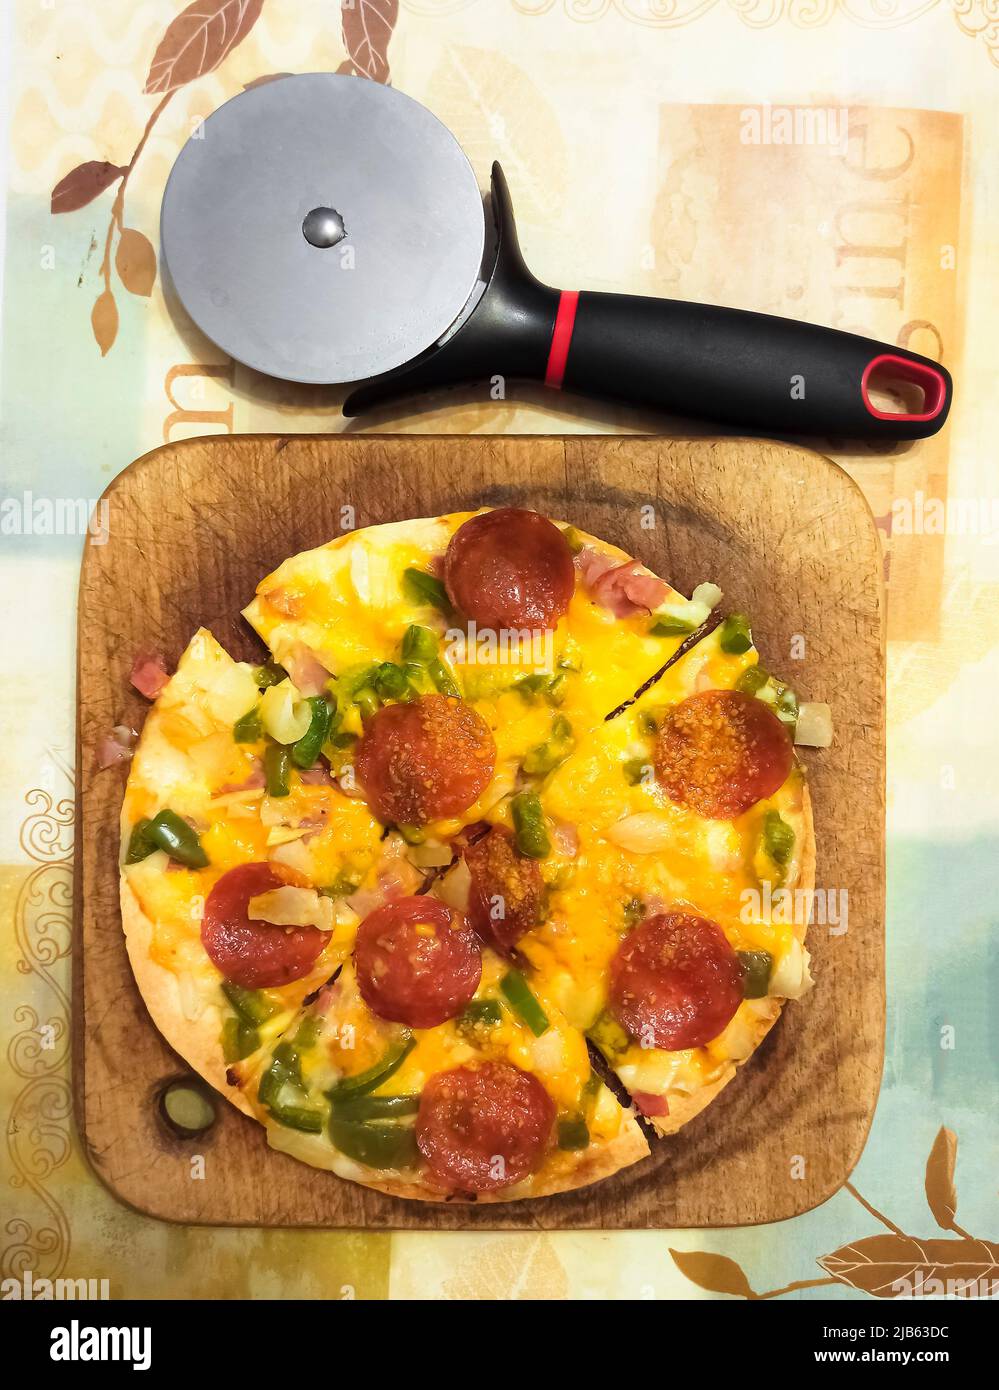 Pizza casera de crujiente fina. Ingredientes: Pimiento verde, cebollas, pepperoni; queso mozzarela, queso parmesano; queso cheddar afilado. Foto de stock